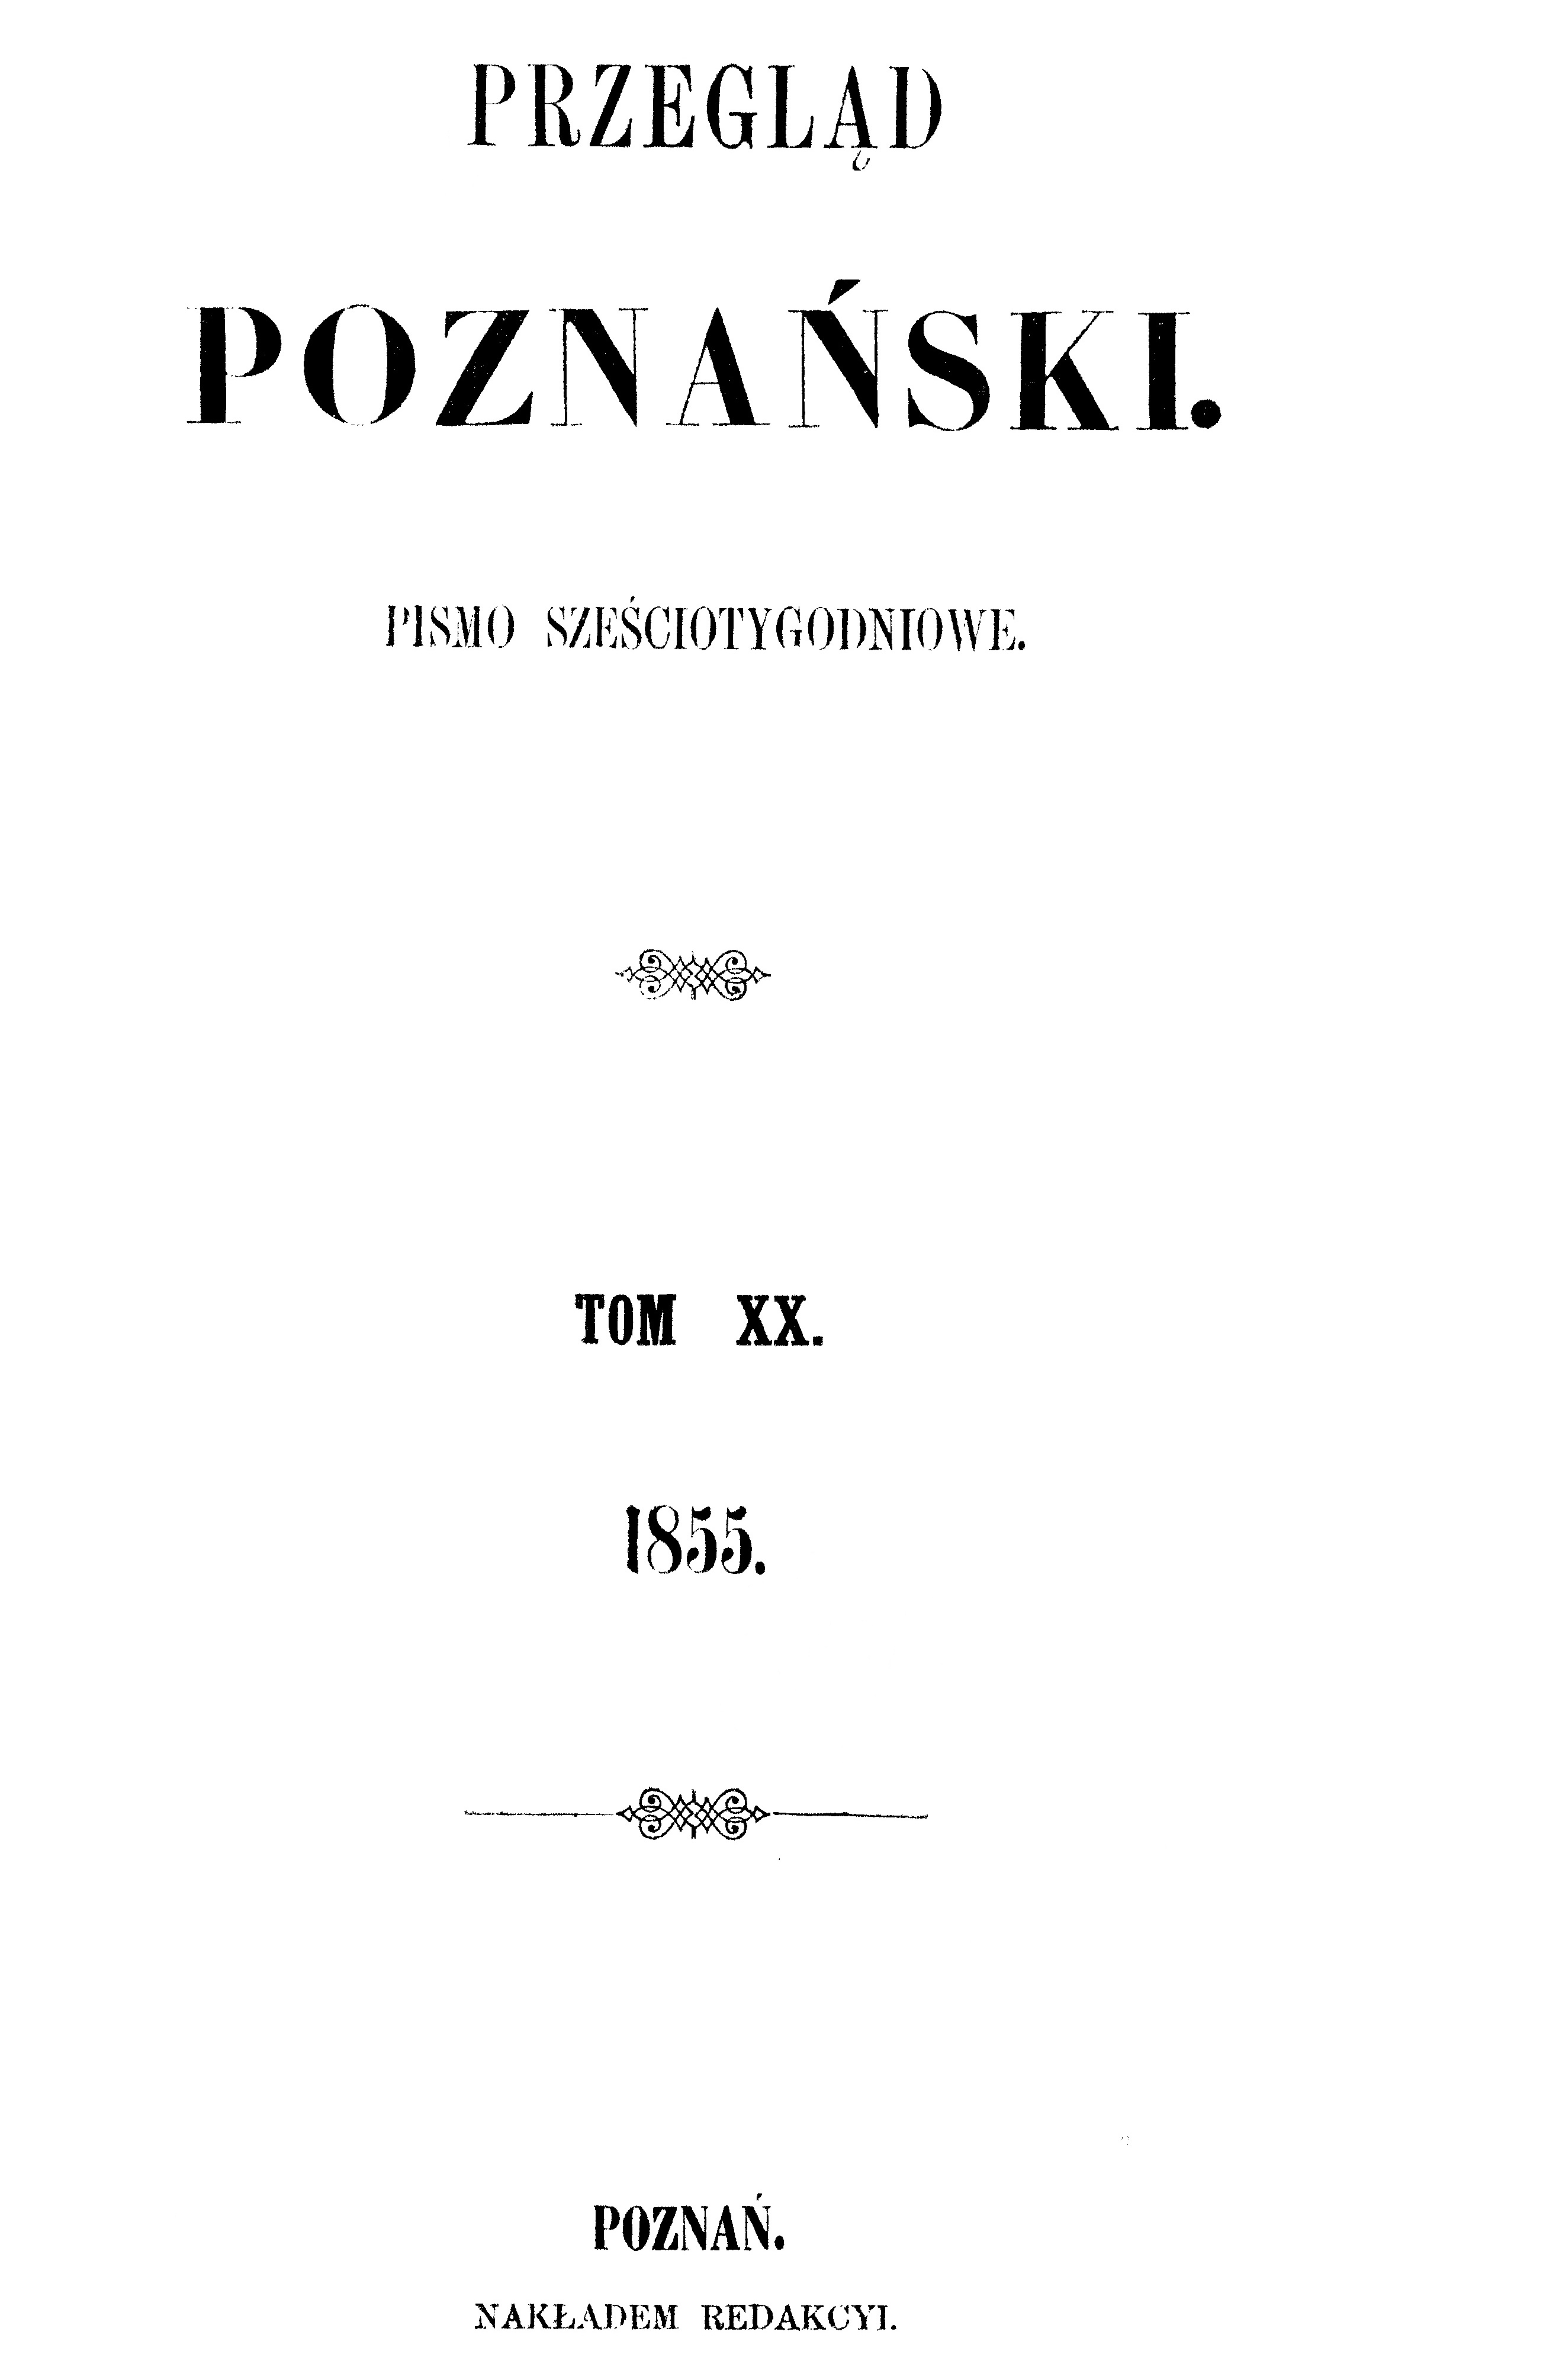 "Przegld Poznaski". Pismo szeciotygodniowe. Tom XX. 1855. Pozna. NAKADEM REDAKCJI.